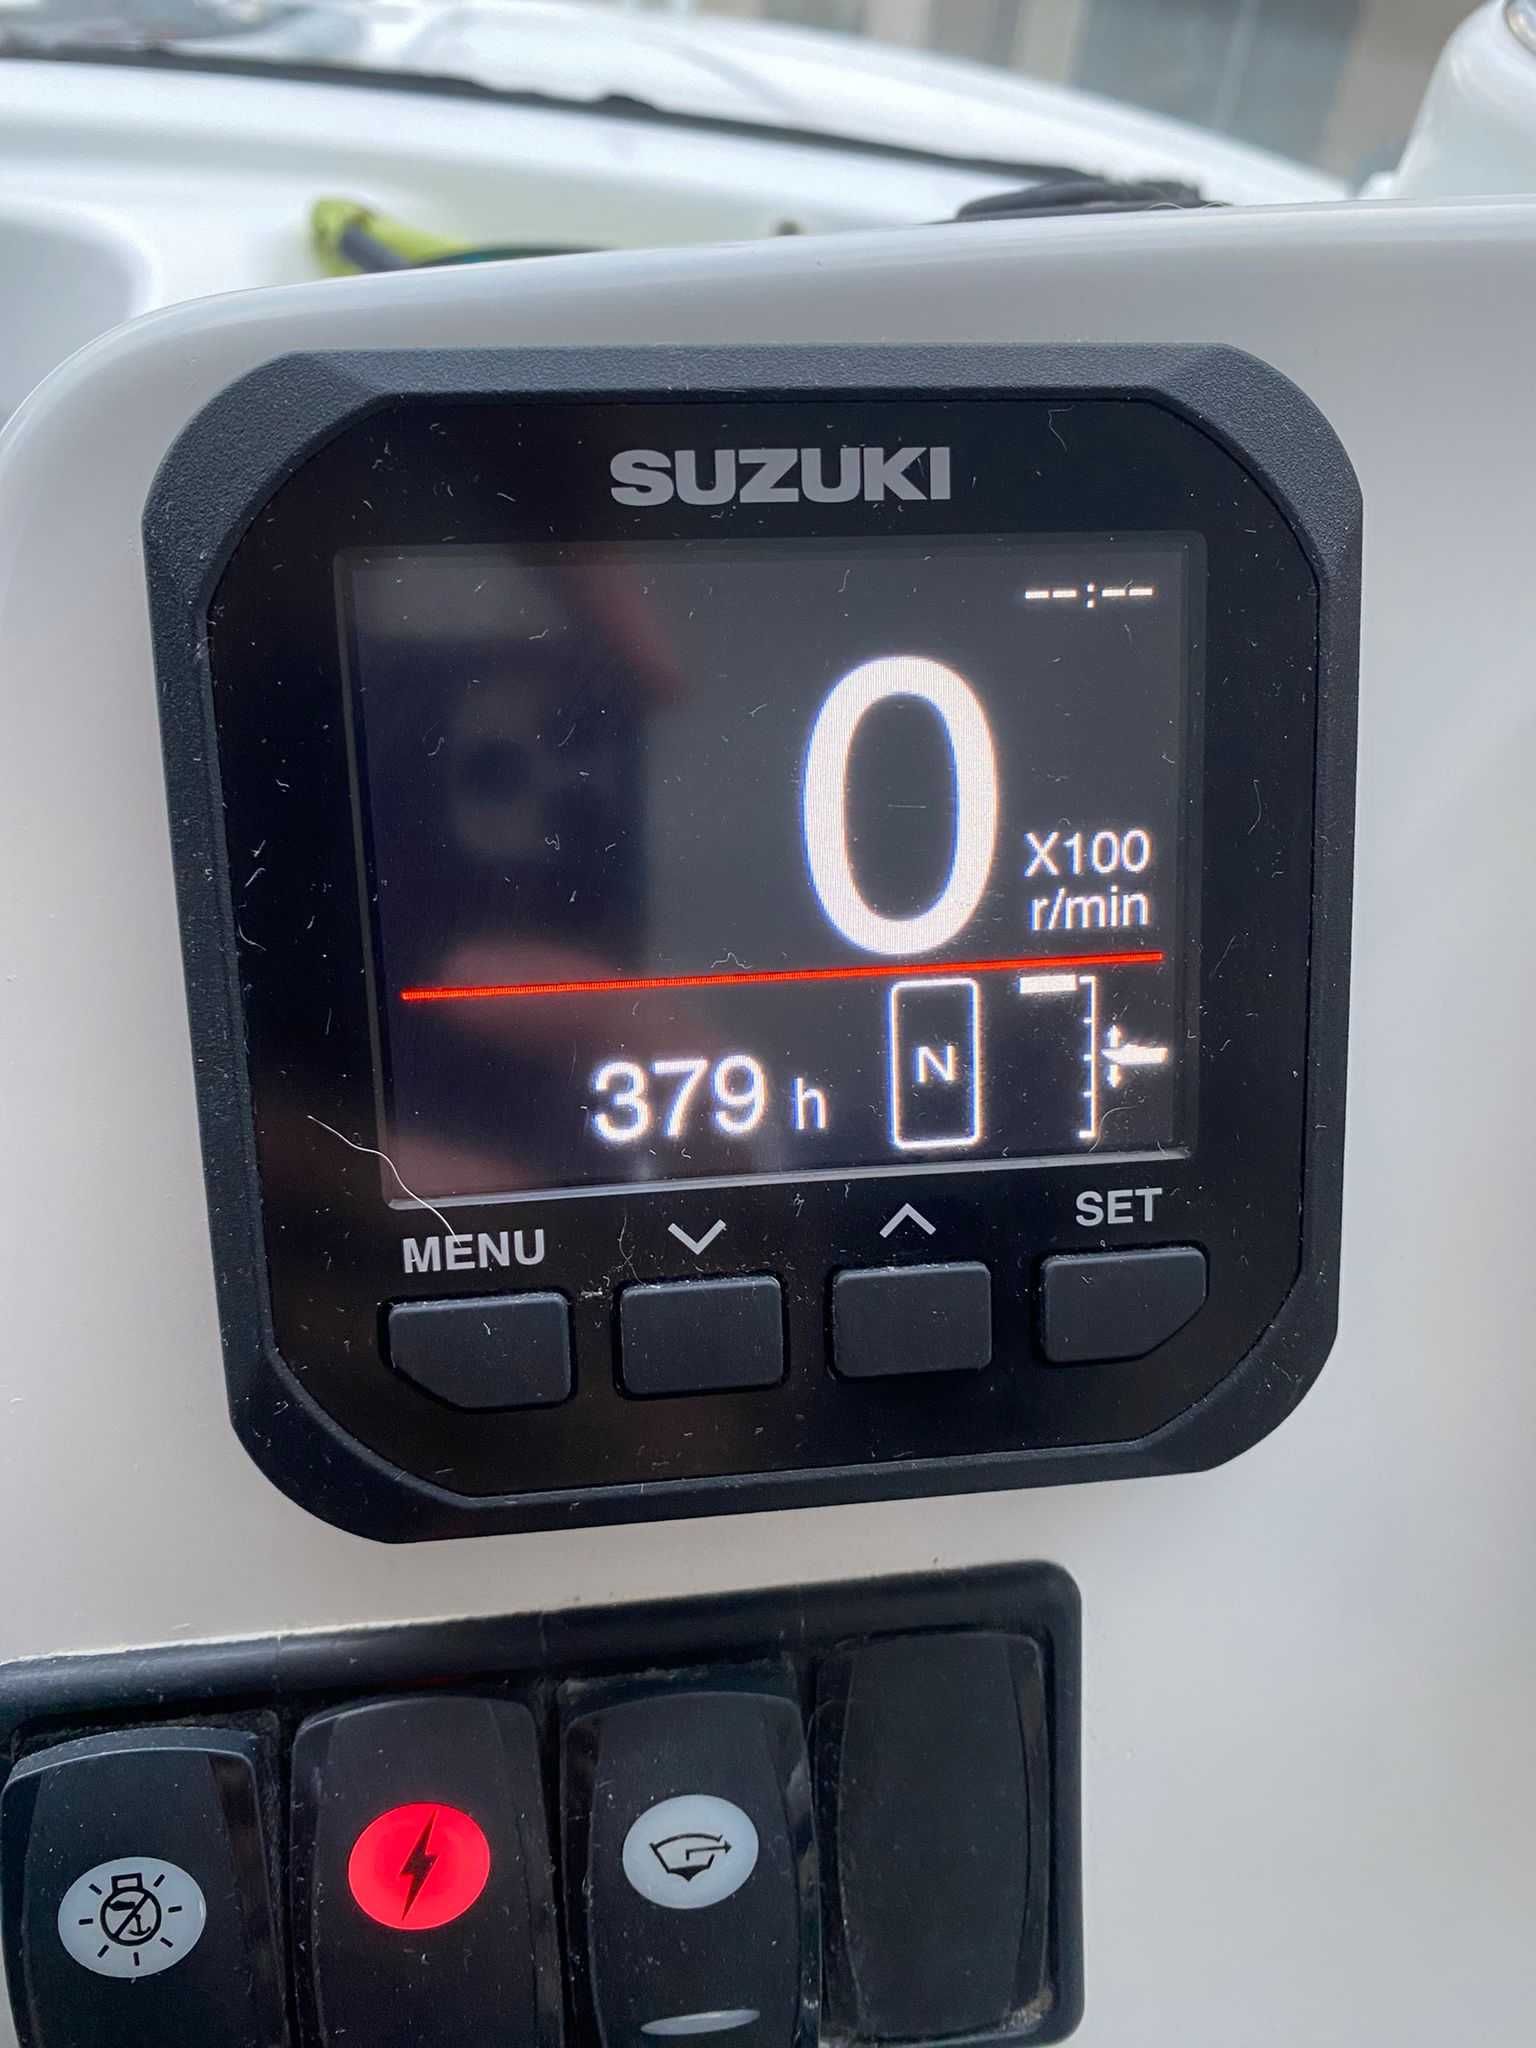 CABINATA  BENETEAU Antares 6 OB 2019  Motor Suzuki 115 cp IN STOC